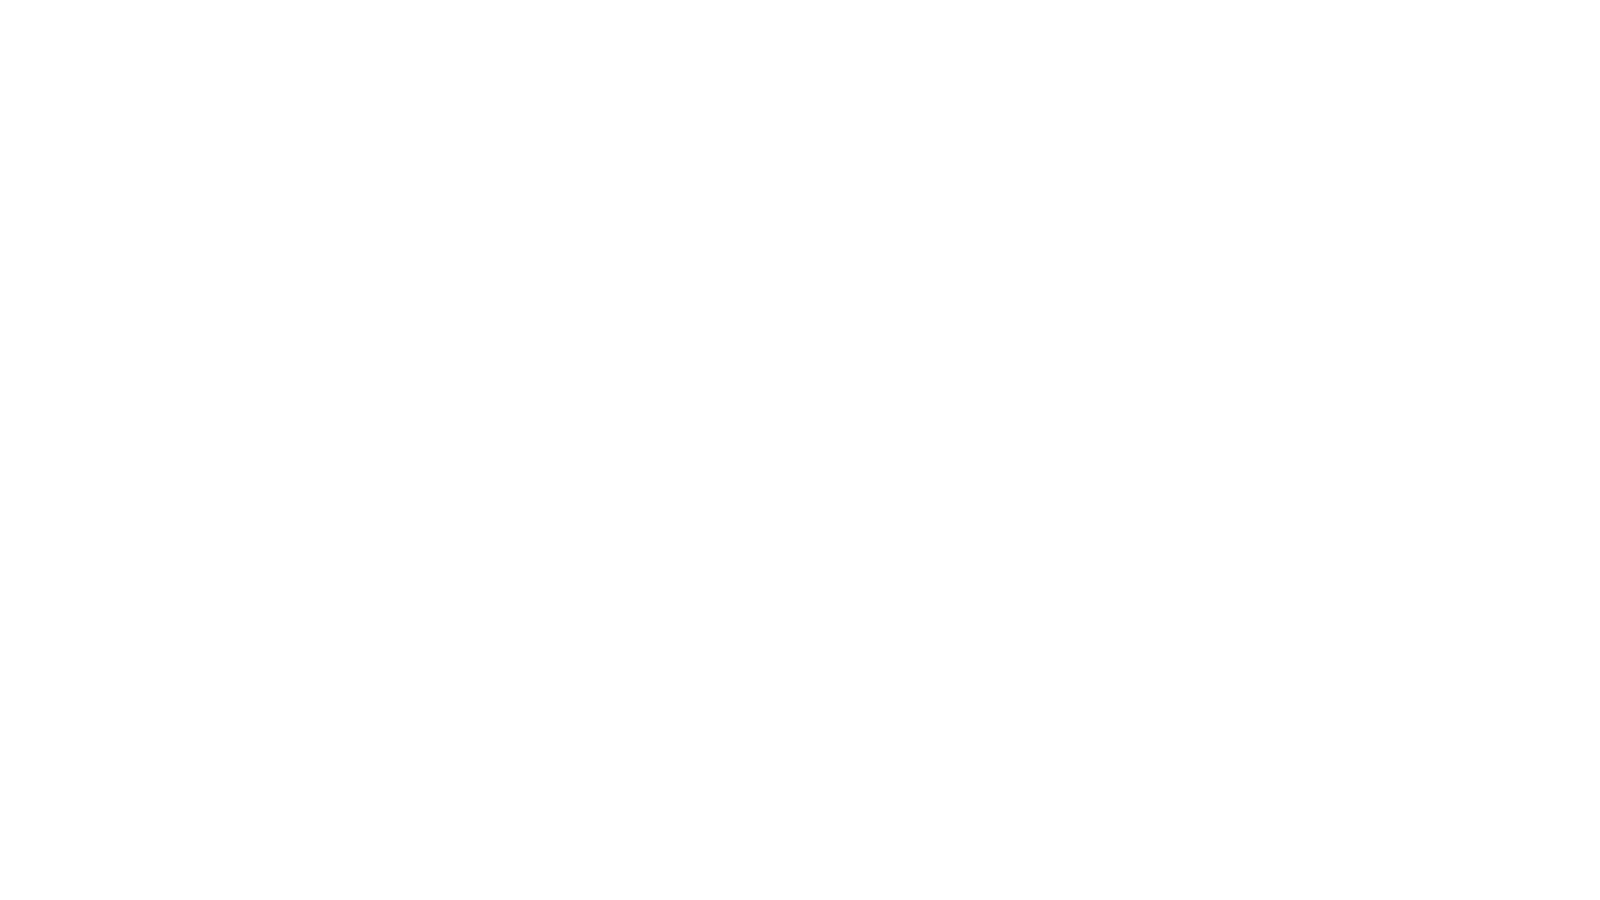 Eatnemen Vuelie – Music by Frode Fjellheim / arranged by Emily Crocker

Diese Aufnahme ist entstanden während dem Konzert „Lieder in der Nacht“ im Rahmen des Cantars Wil.
Samstag 11.Juni 2022 23.00 Uhr in der Kirche St. Peter Wil

---

Mitwirkende:
Gesang - Jugendchor und Intune der Singbox Wil
Musikalische Leitung - Markus Leimgruber

---

Switzerland / www.singboxwil.ch

#eatnemenvuelie–musicbyfrodefjellheim #eatnemenvuelie–musicbyfrodefjellheimdonanobispacem #eatnemenvuelie–musicbyfrodefjellheimand #eatnemenvuelie–musicbyfrodefjellheimandrea #acapella #chor #singbox #intune #jugendchor